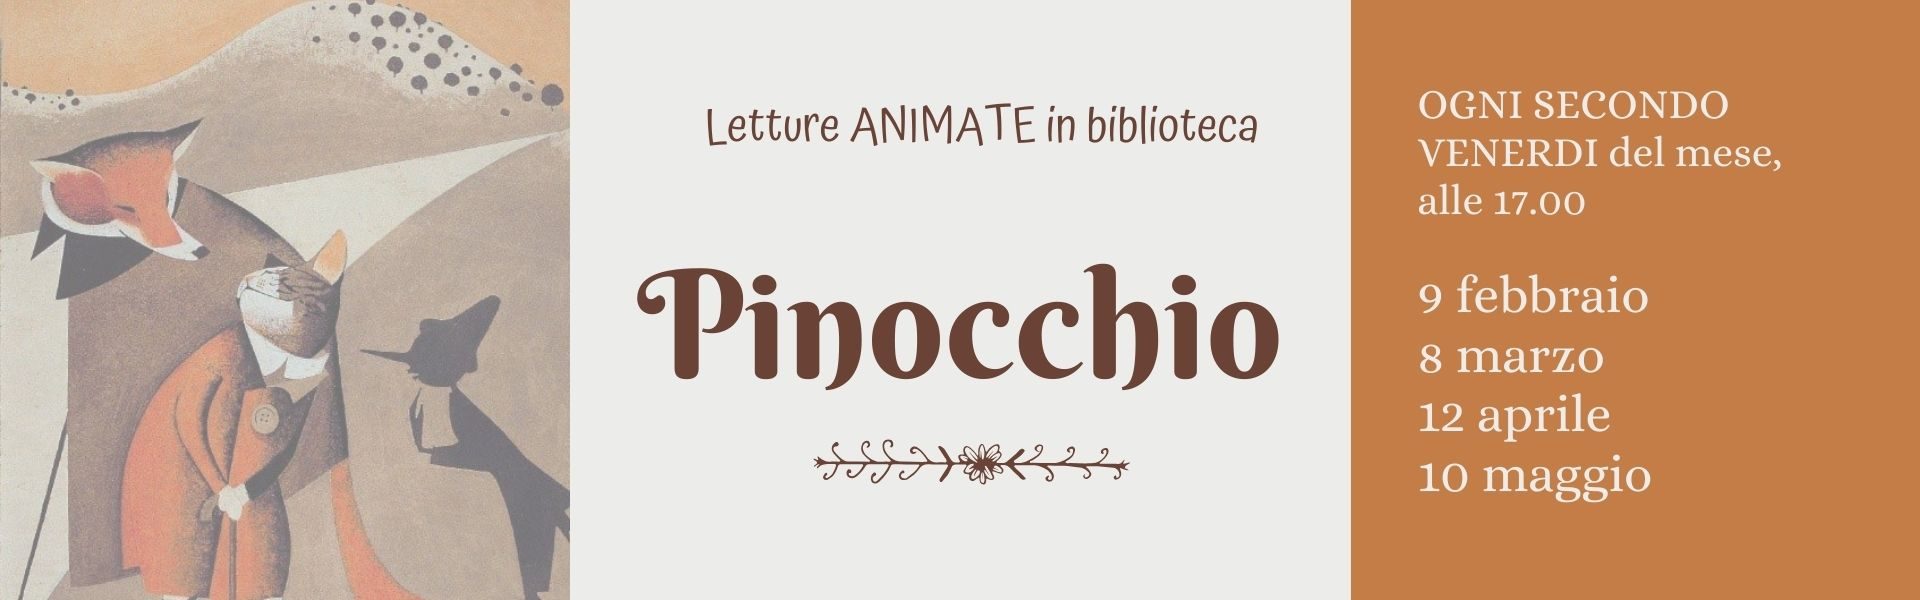 Banner Lettura Pinocchio